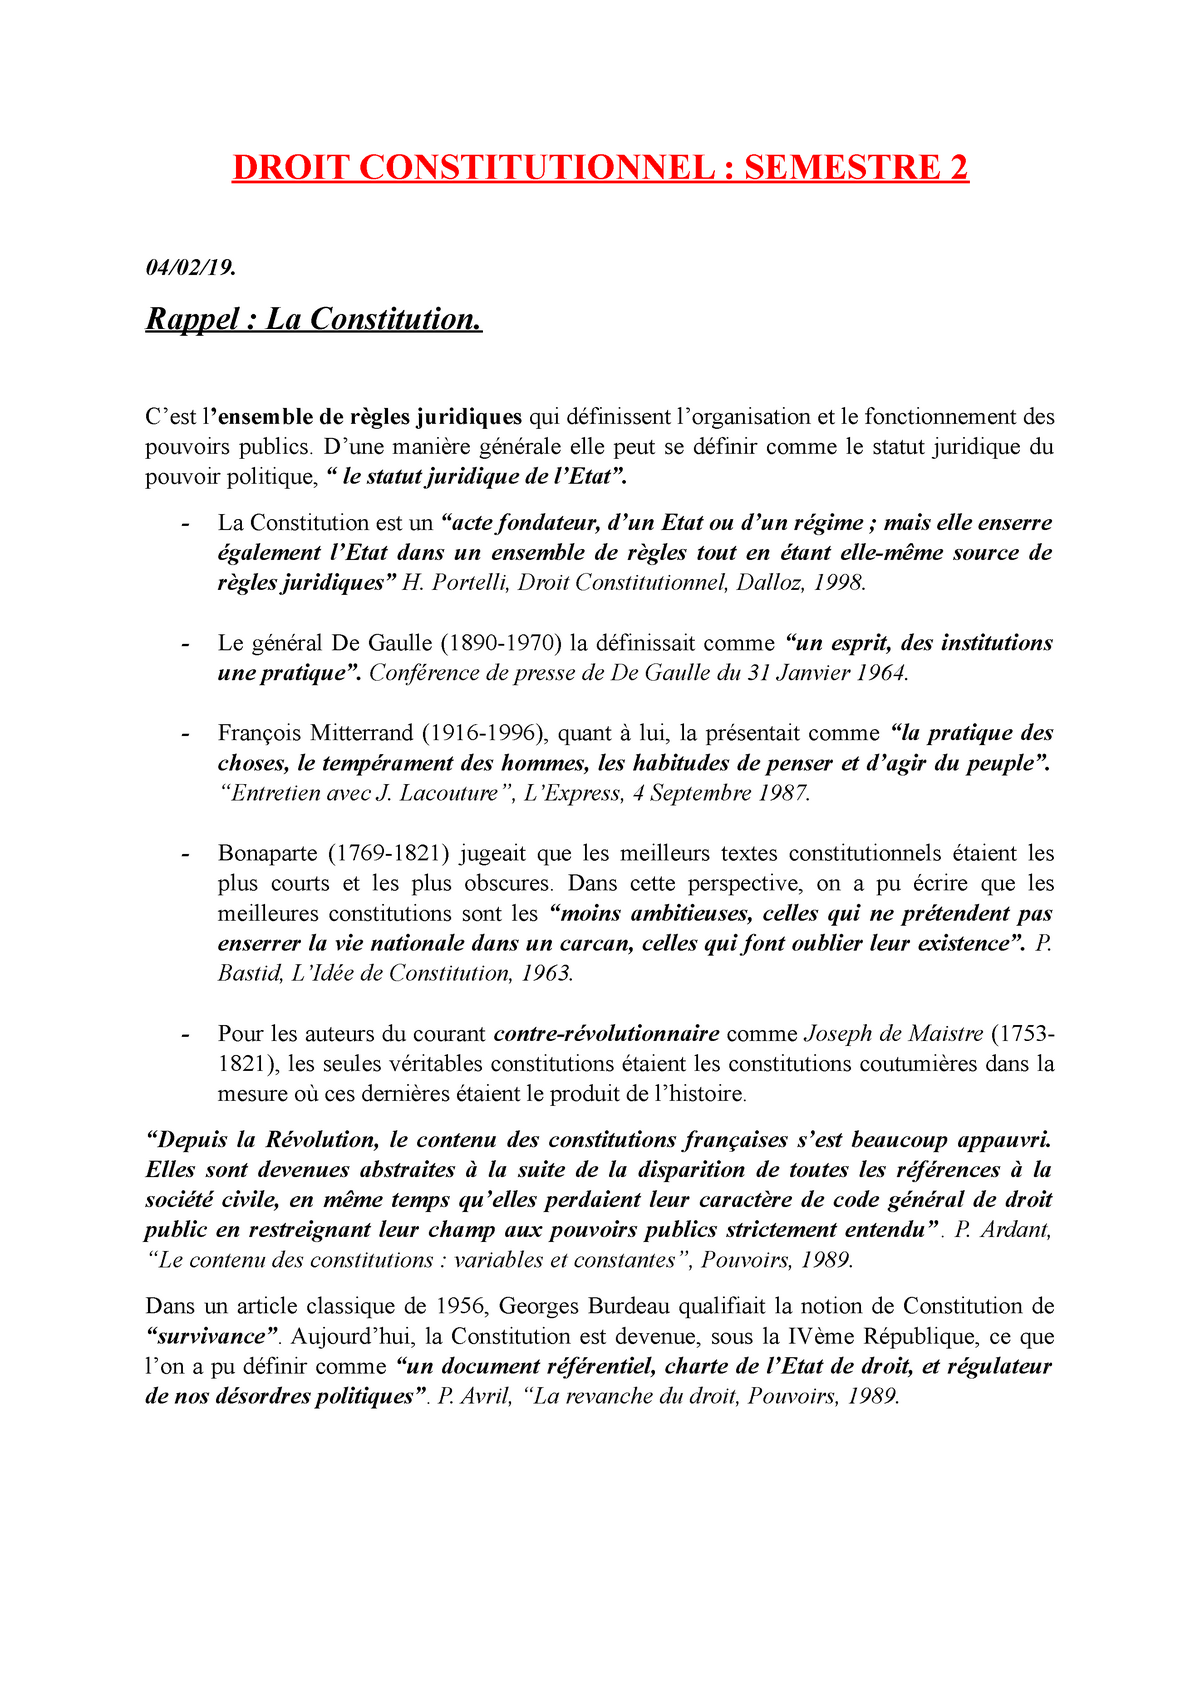 dissertation droit constitutionnel semestre 2